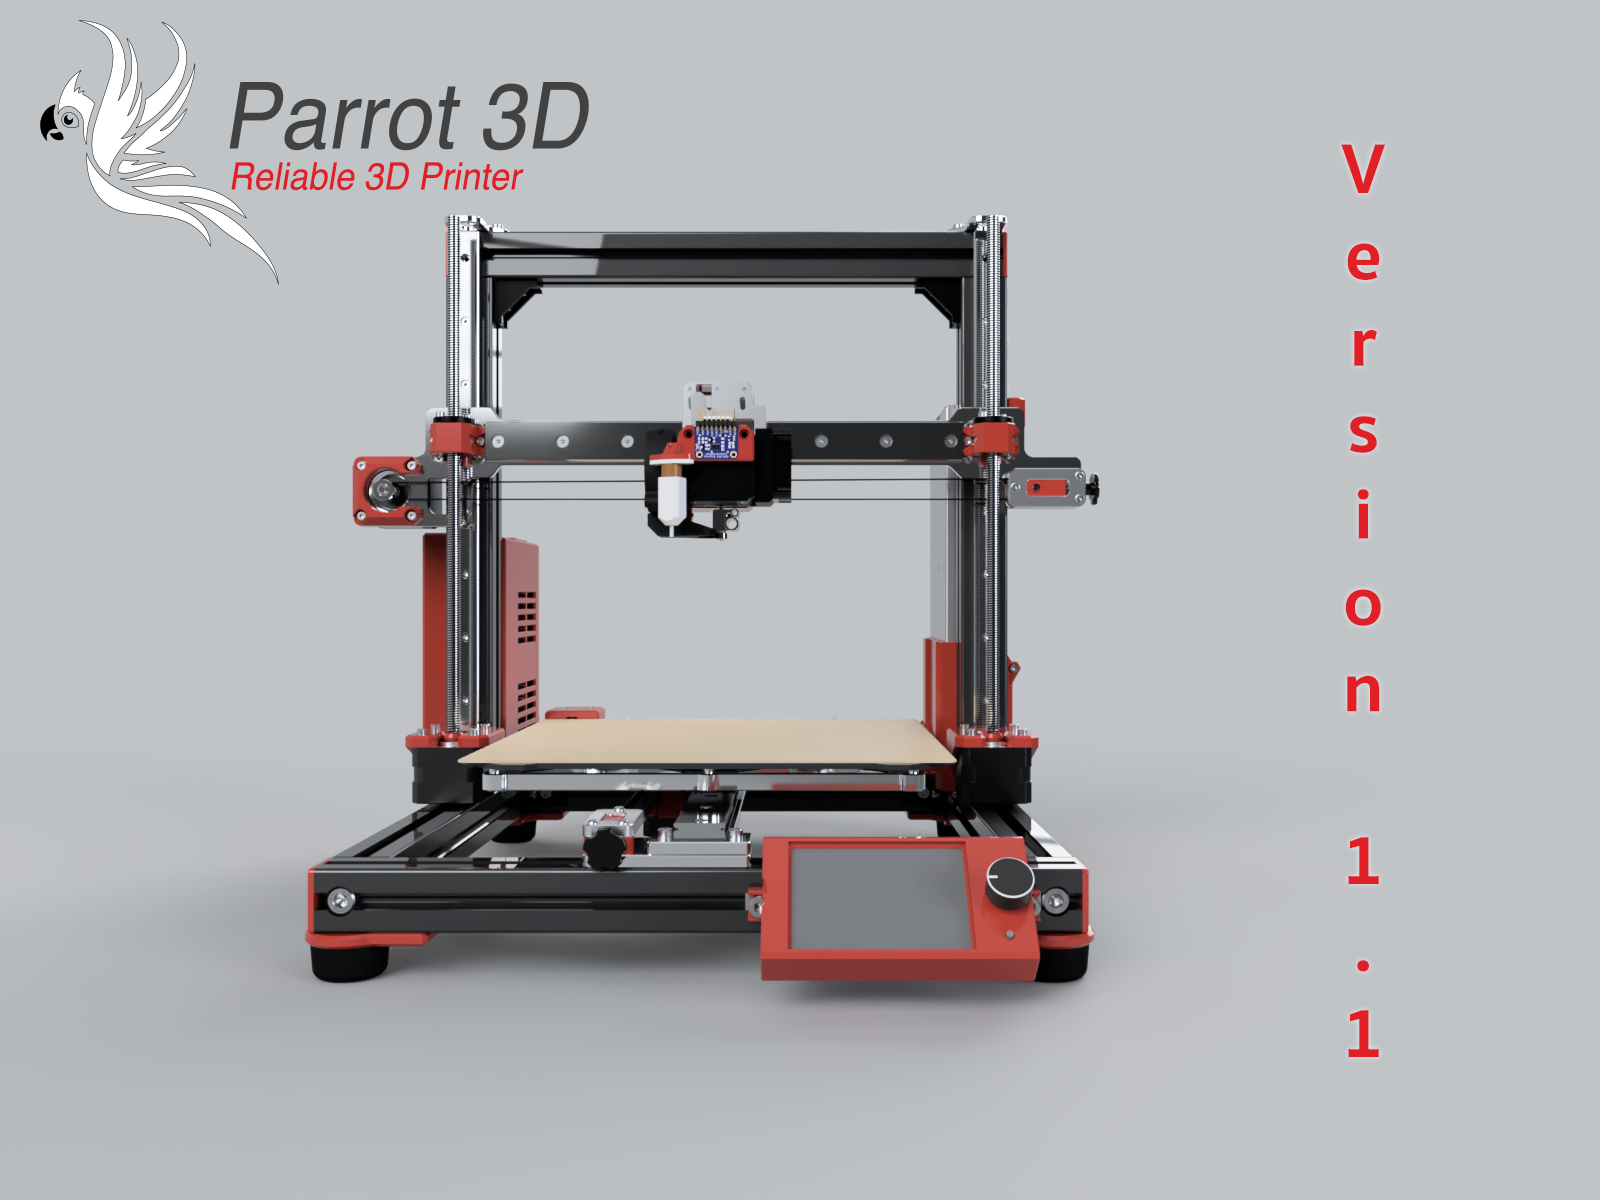 Parrot 3D Front